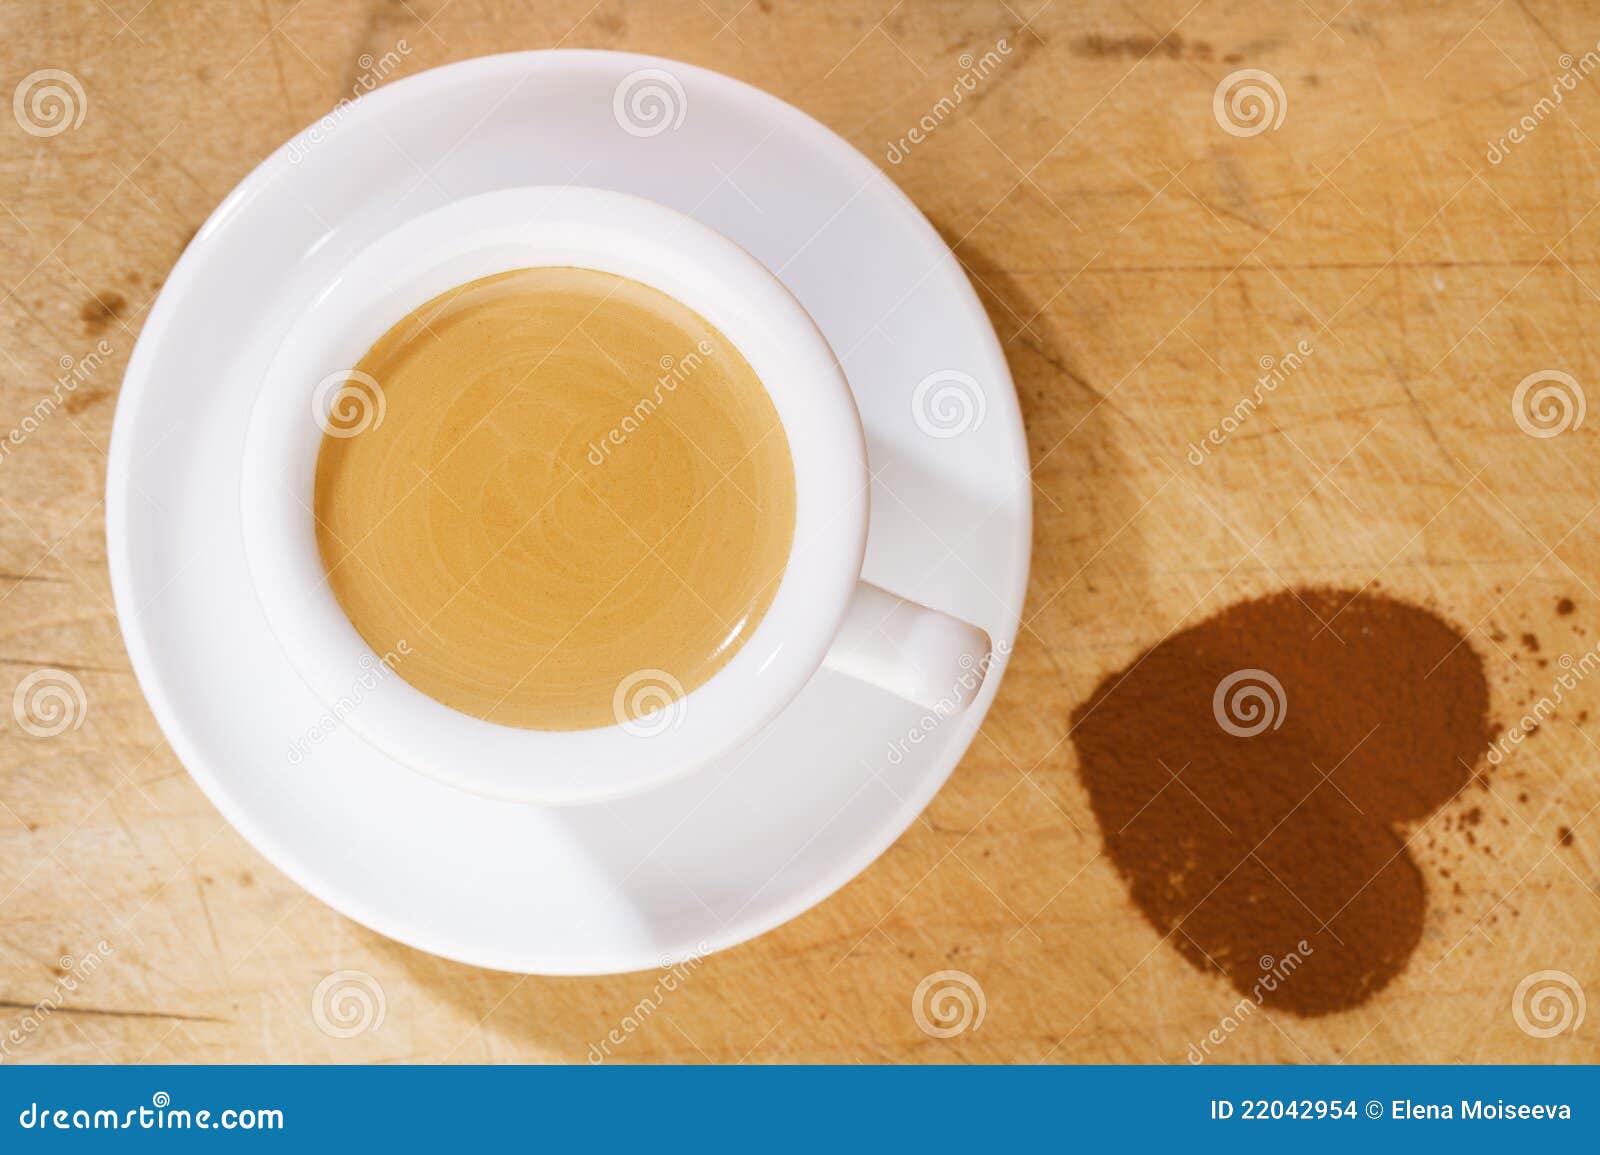 espresso coffee in thick white cup